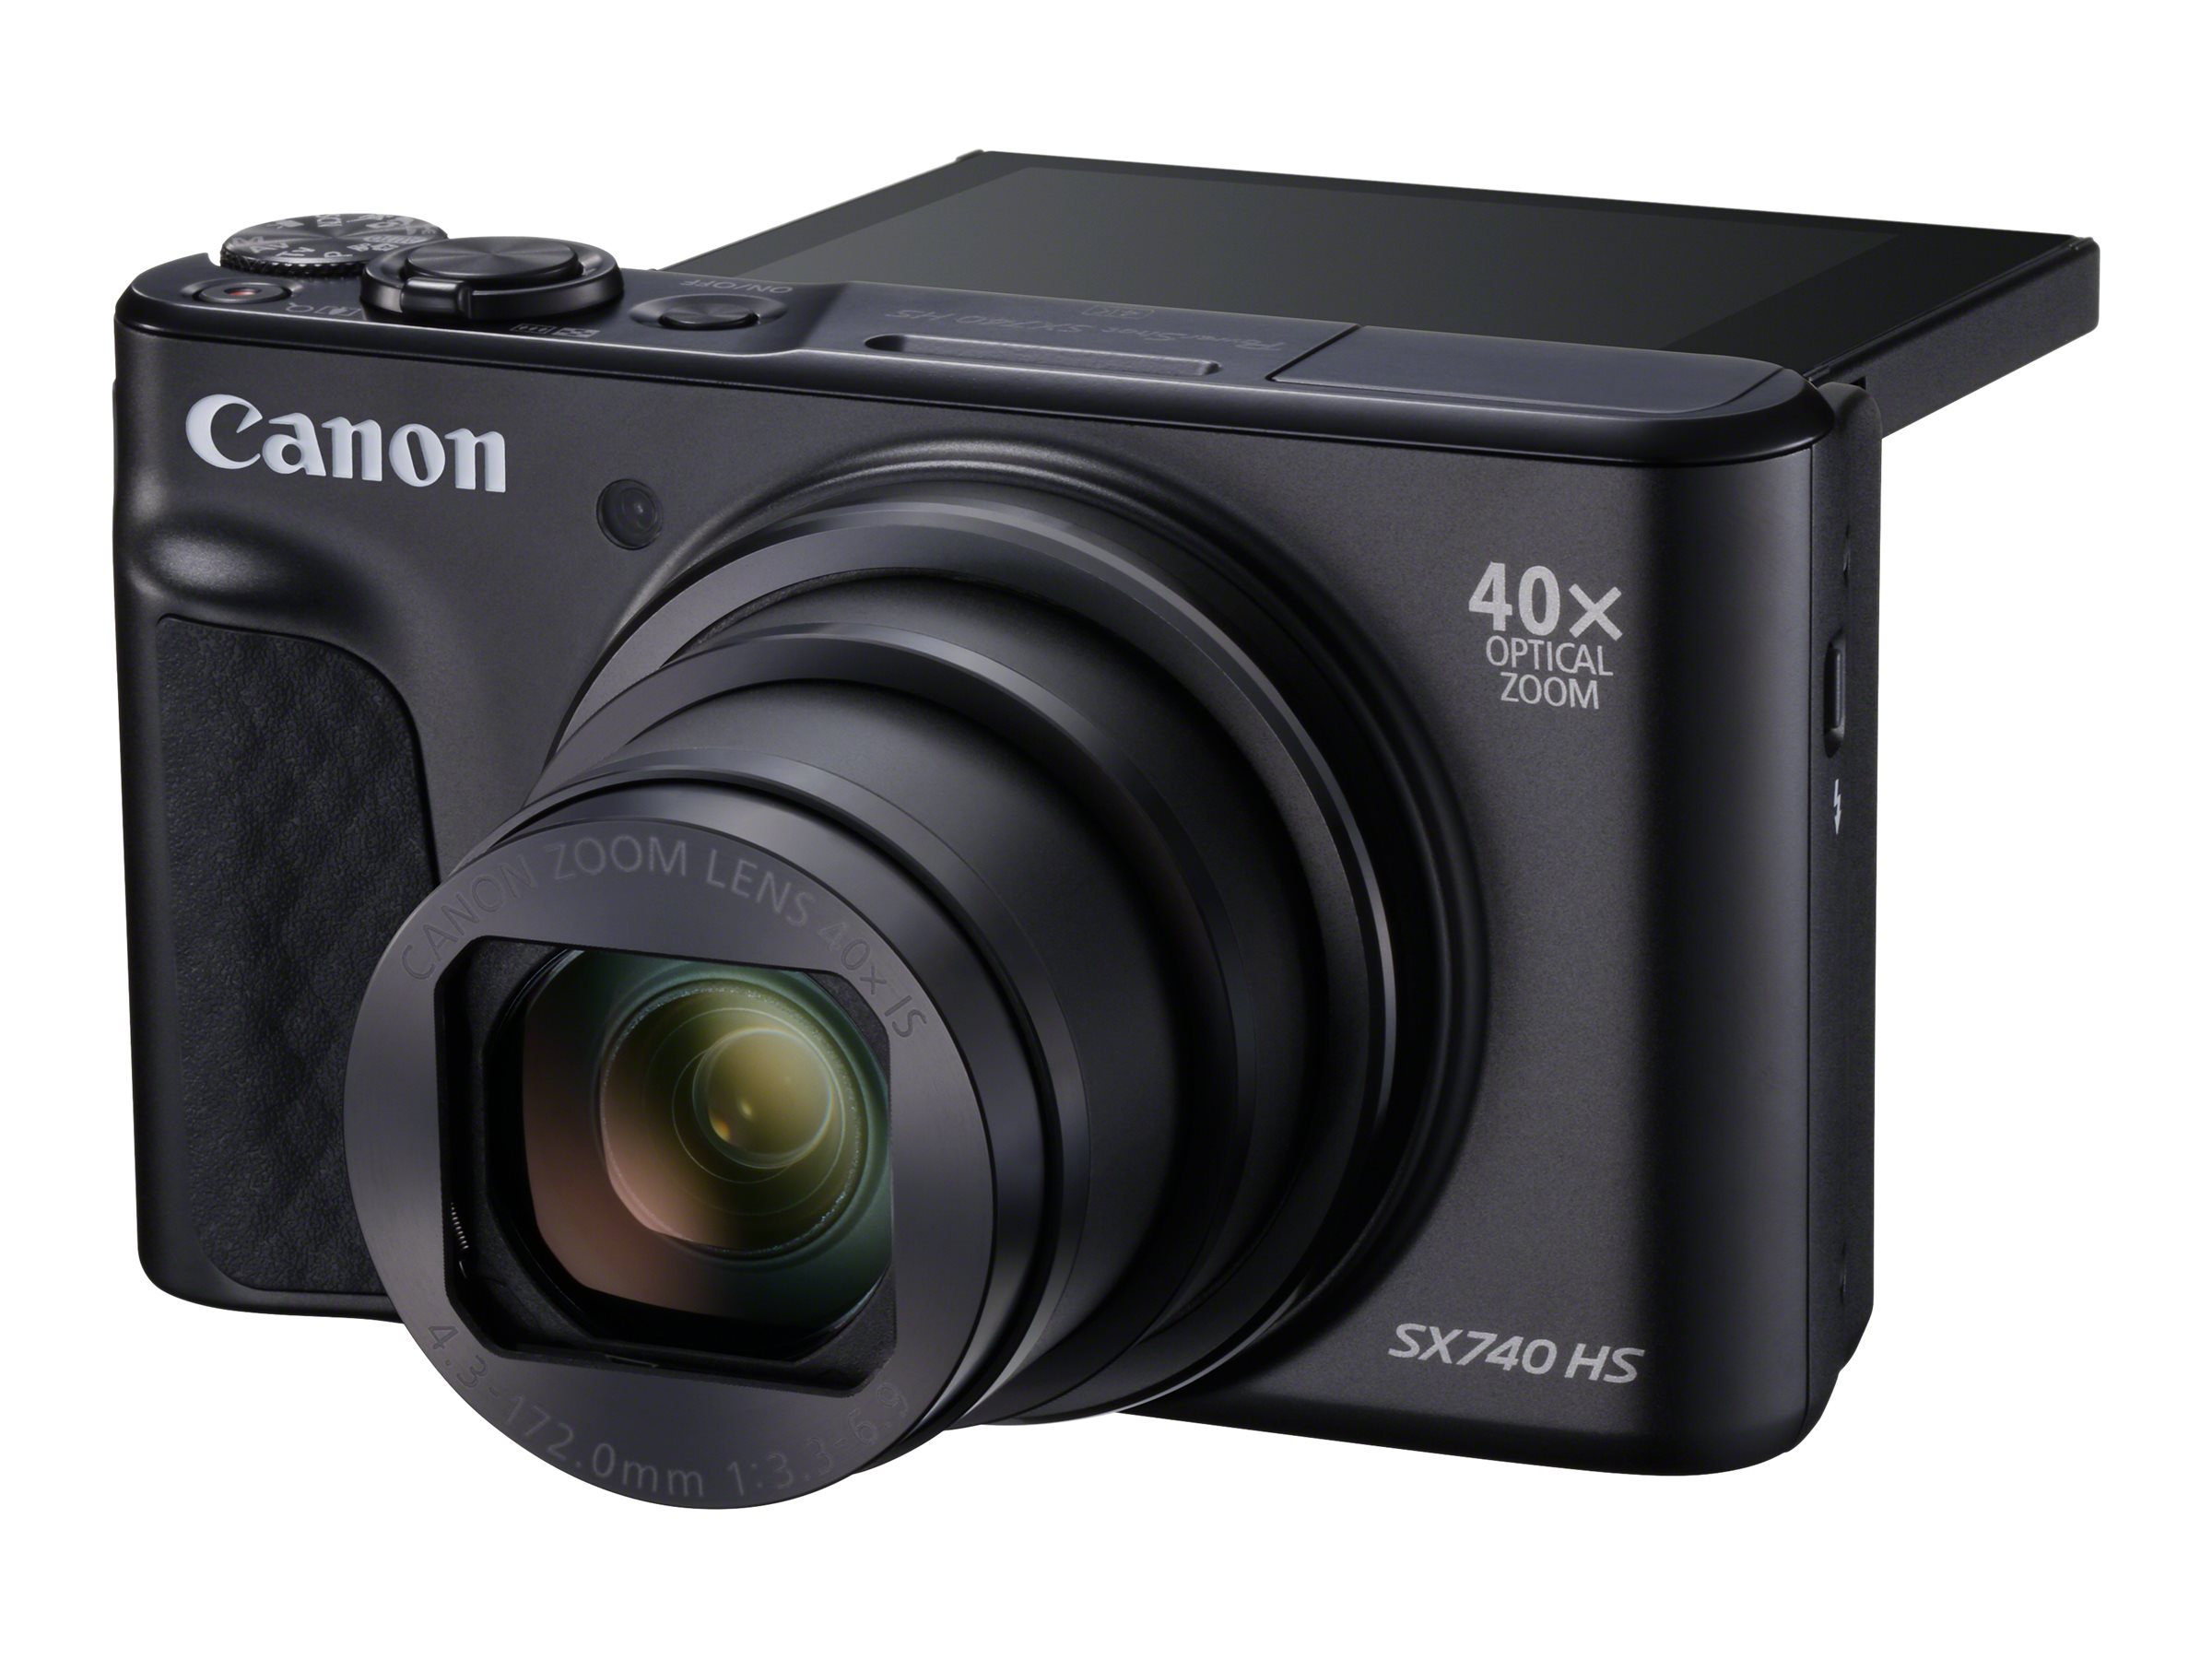 Canon Powershot SX740 HS with Case - Black - 2955C013